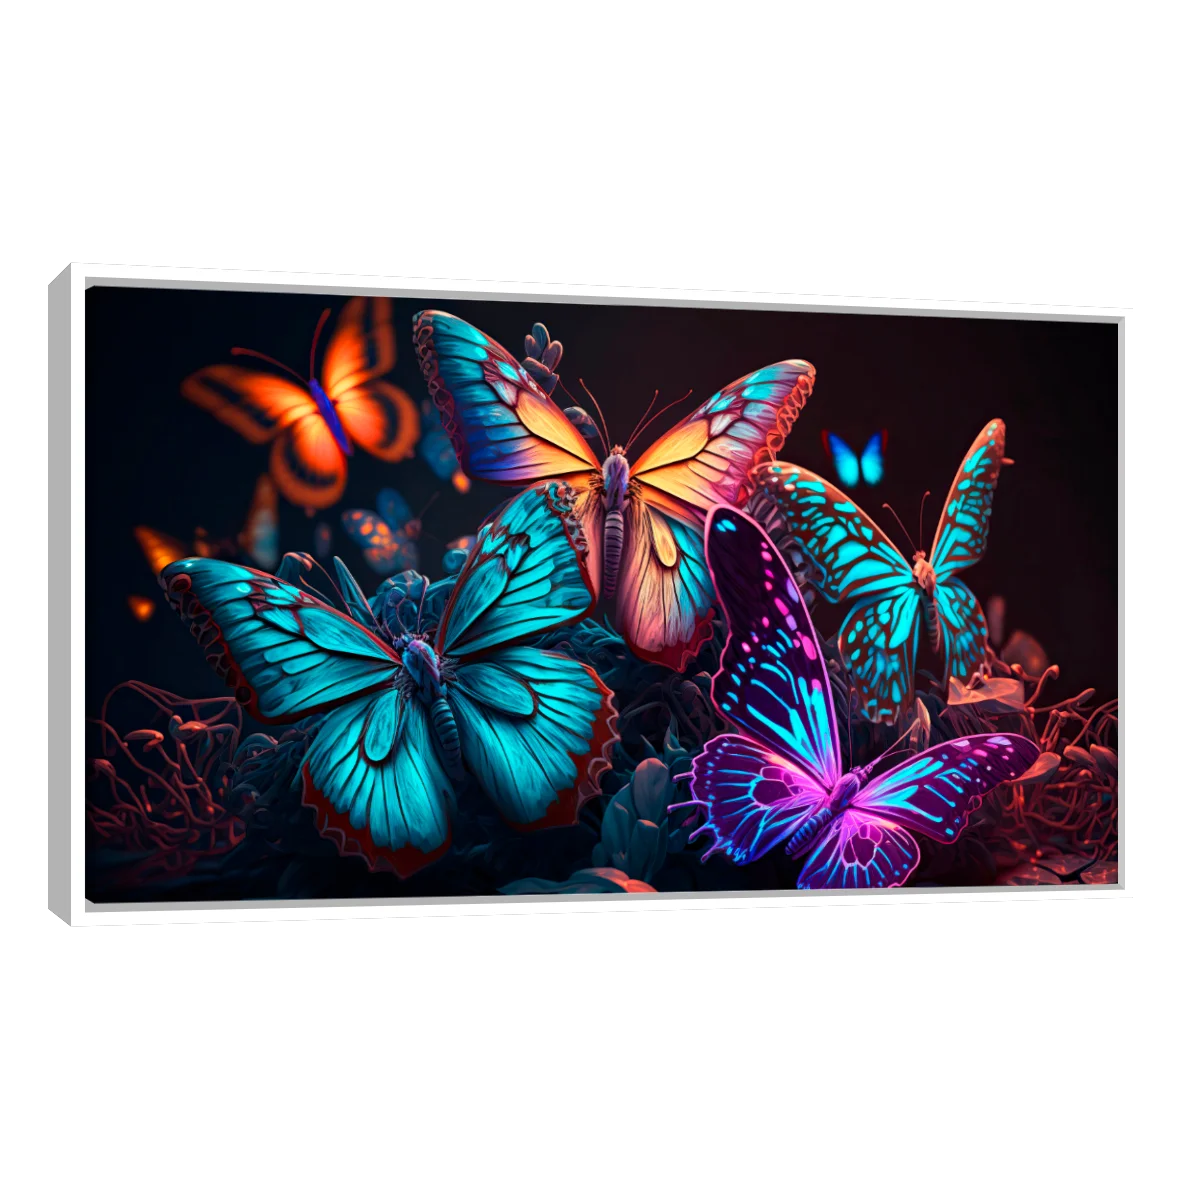 Mariposas Neon